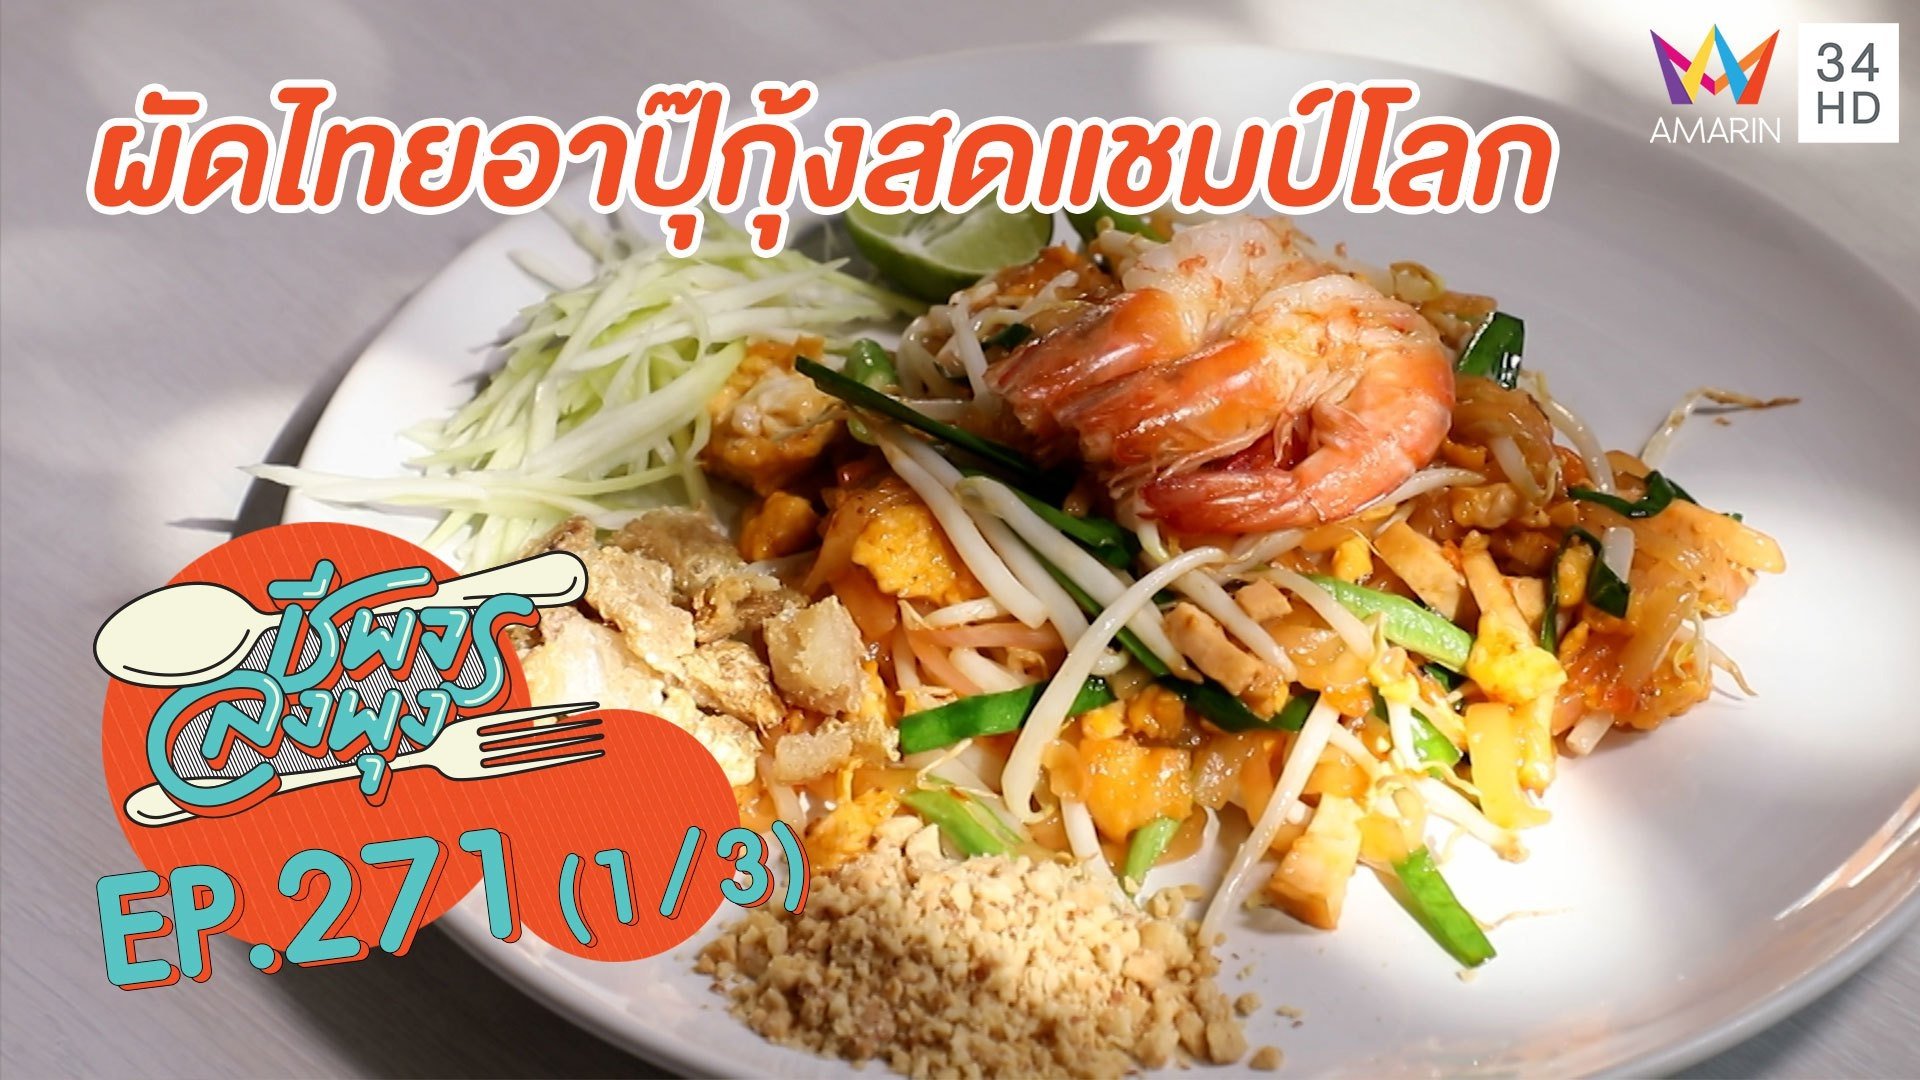 'ผัดไทยอาปุ๊กุ้งสดแชมป์โลก' อร่อยกลมกล่อม | ชีพจรลงพุง | 24 ม.ค. 64 (1/3) | AMARIN TVHD34